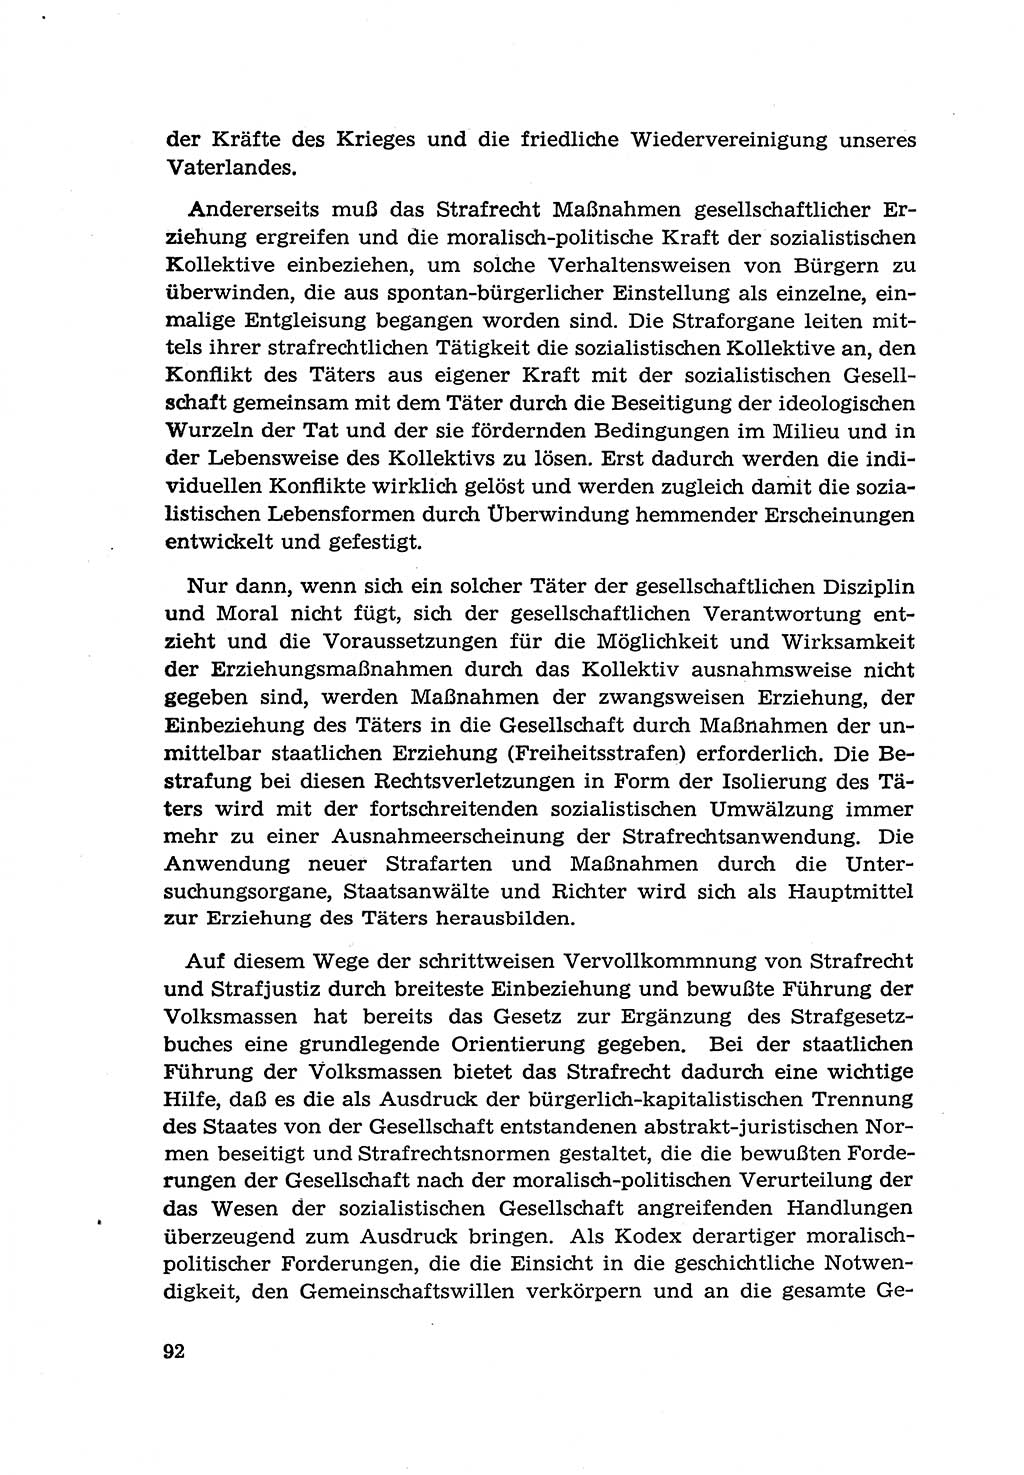 Zur Entwicklung des sozialistischen Strafrechts der Deutschen Demokratischen Republik (DDR) 1960, Seite 92 (Entw. soz. Strafr. DDR 1960, S. 92)